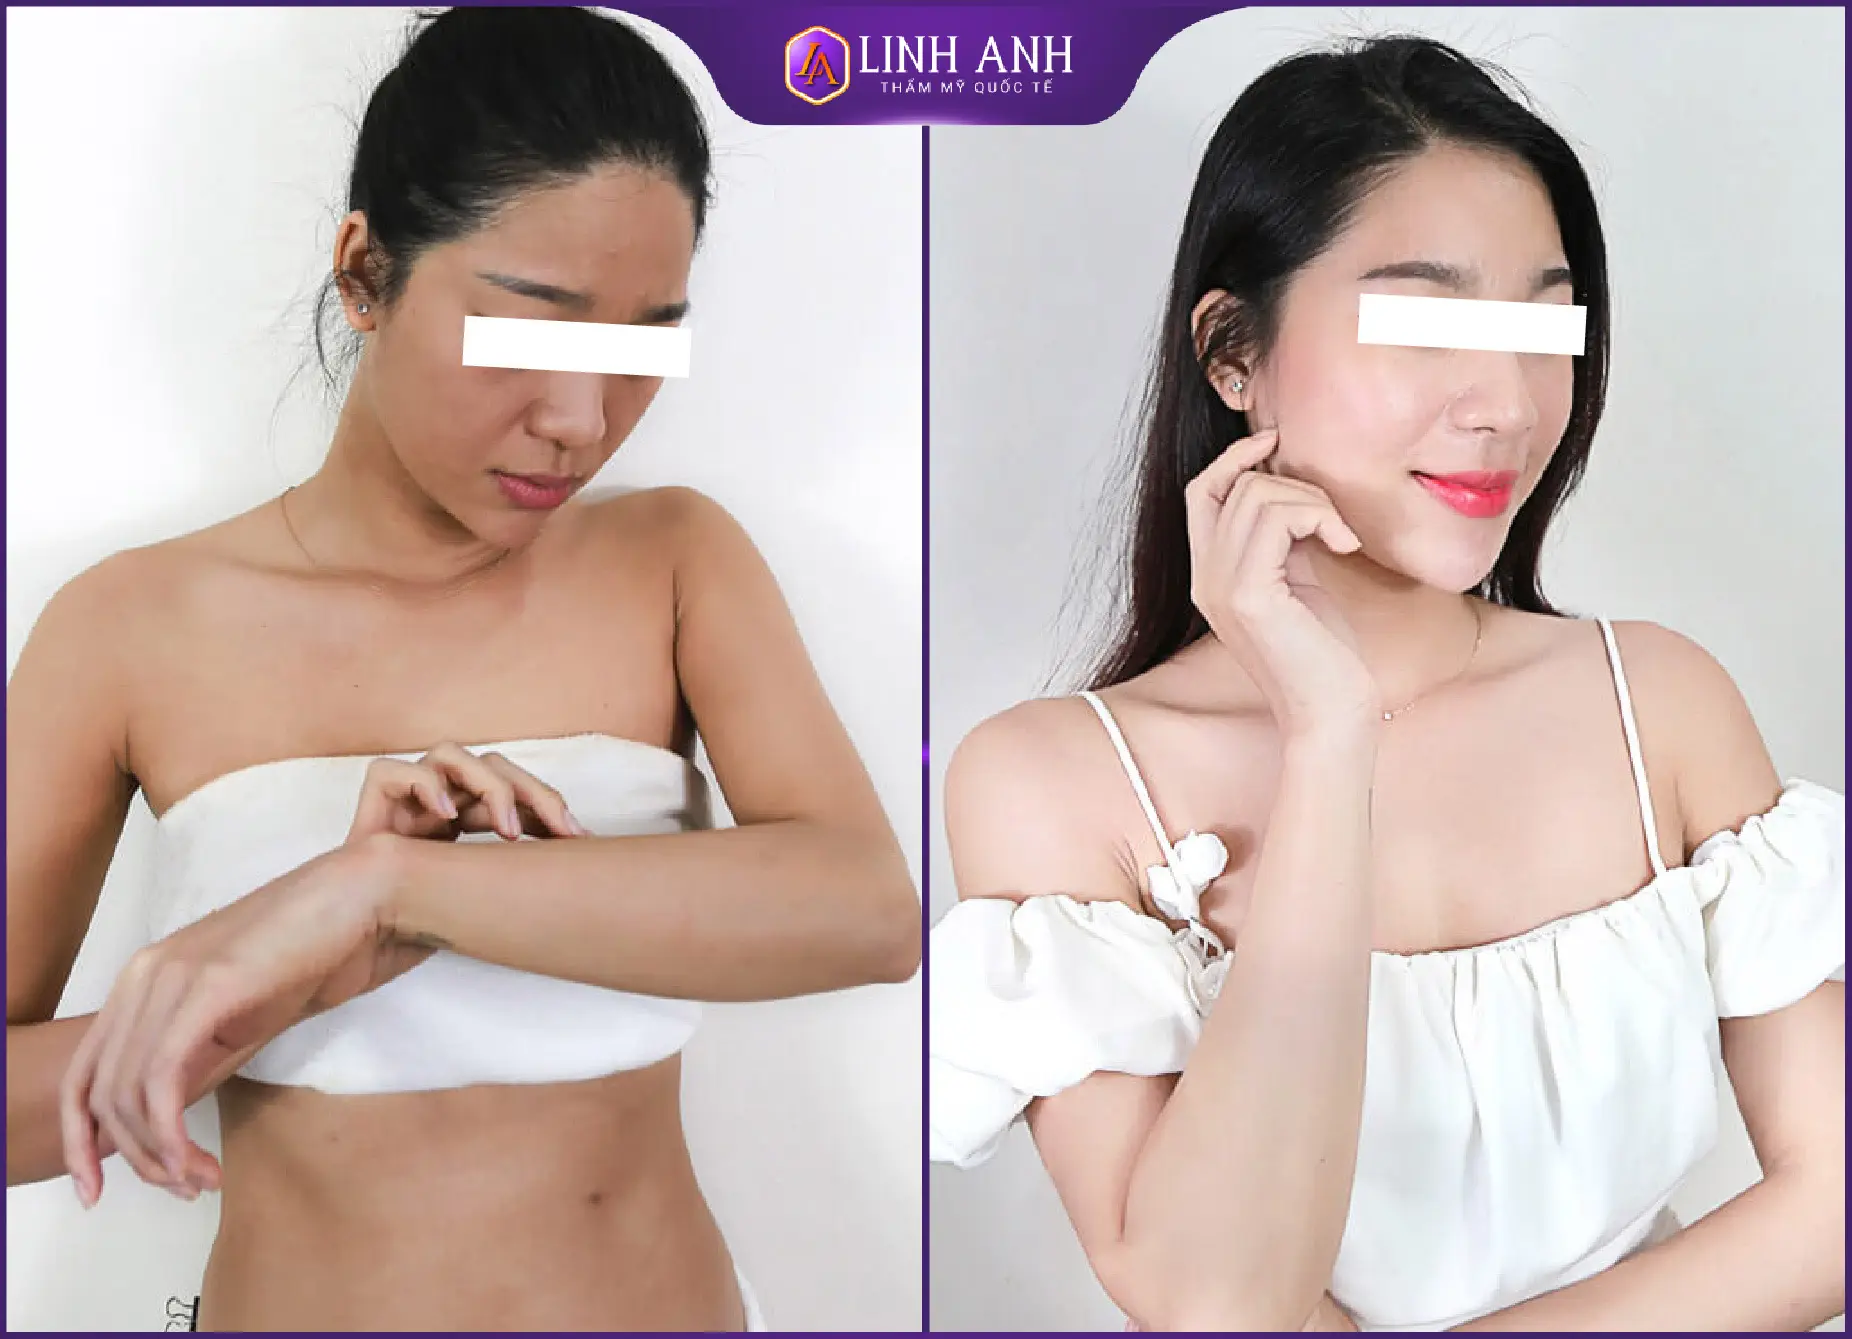 Chị Tuyết Nhung (34 tuổi) Tắm trắng Collagen Body Trước: Da sạm màu, khô sần, nhiều đốm nâu vùng bụng và cánh tay.<br> Sau: Xoá sổ đốm nâu, thâm sạm. Thay da mới trắng hồng, mịn màng, căng mướt.